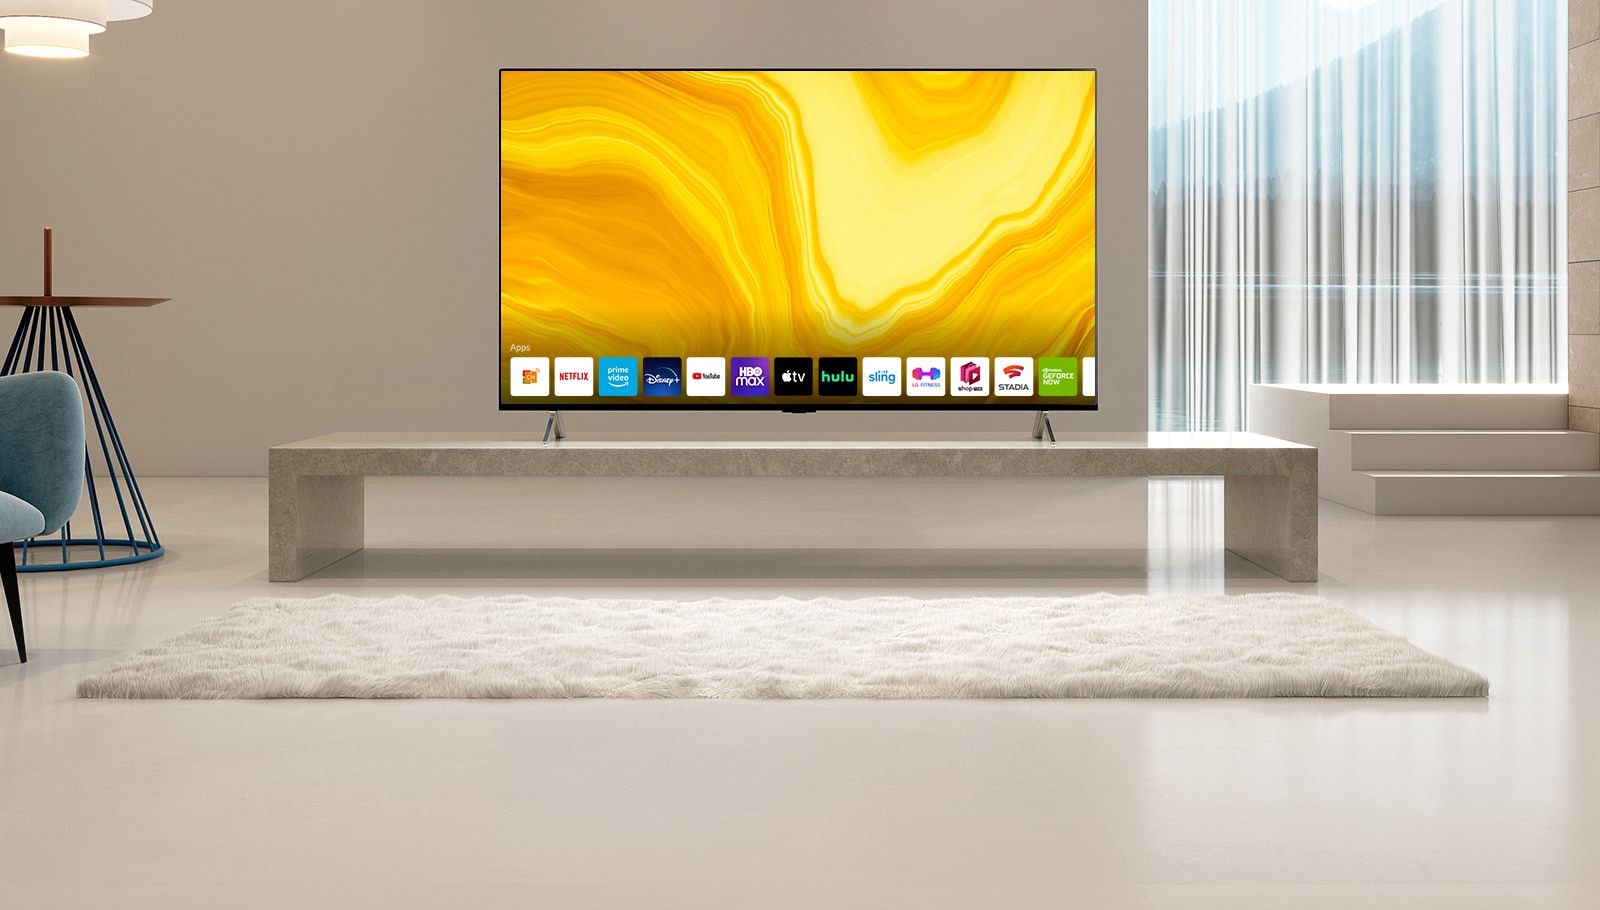 Zobrazuje sa zoznam grafických používateľských rozhraní na domovskej obrazovke televízora LG QNED s posúvaním nadol. Scéna sa zmení a ukáže sa televízor umiestnený v žltej obývačke.